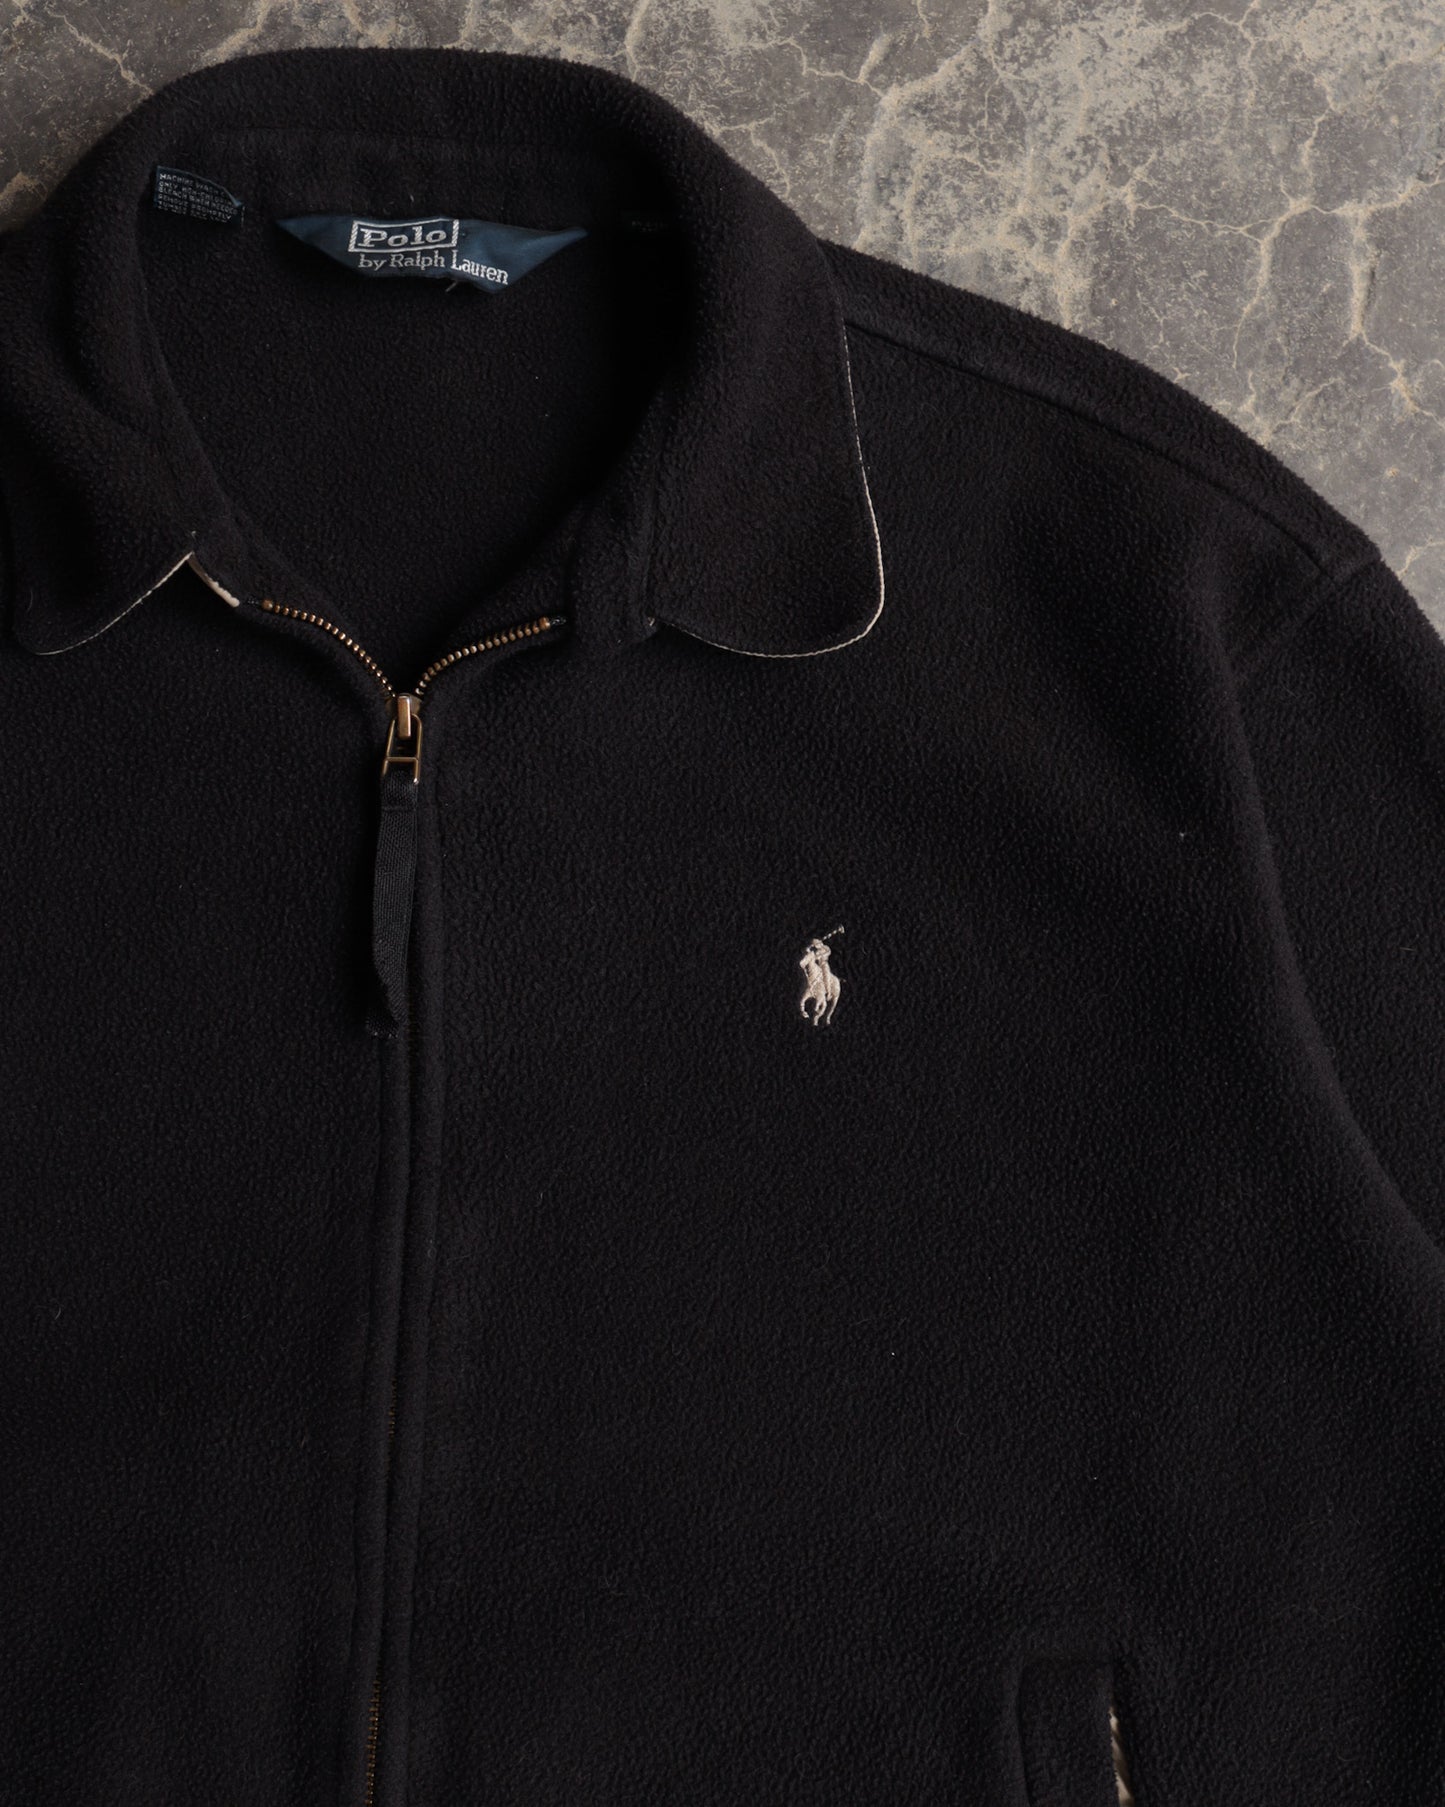 90s Polo Ralph Lauren Black Fleece Sweatshirt - L